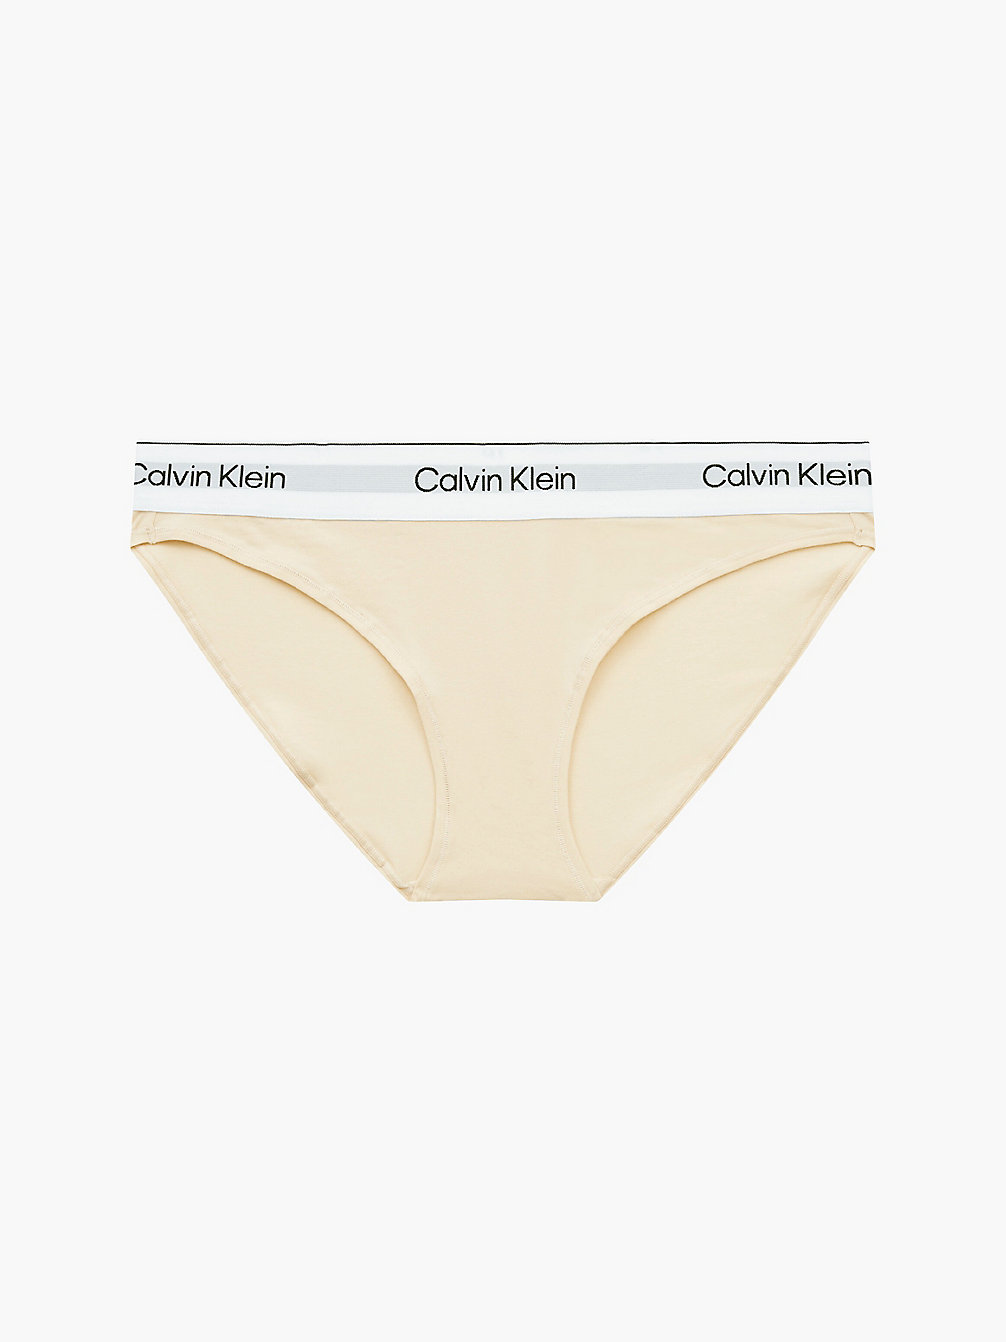 STONE Bikini Brief - Modern Cotton undefined women Calvin Klein